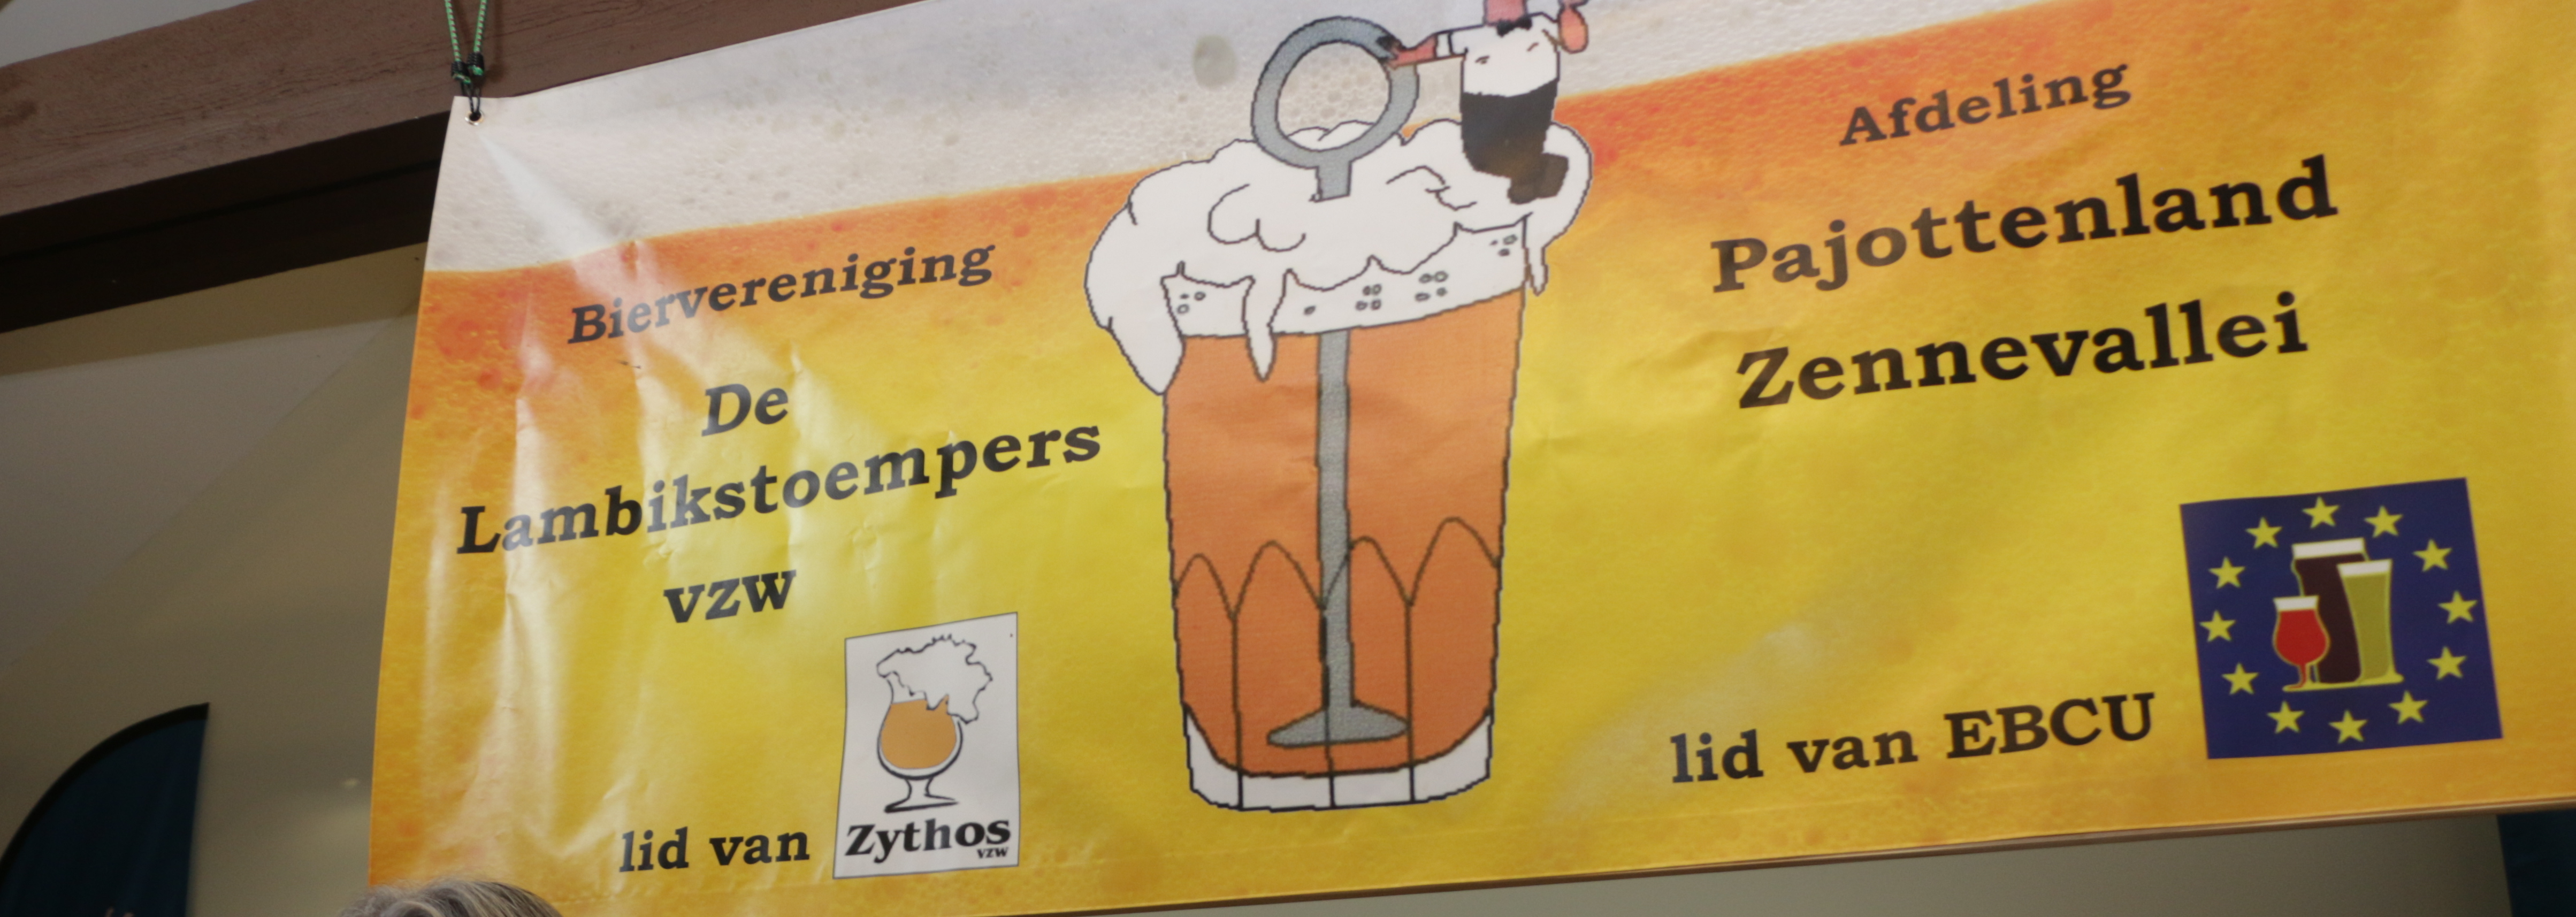 De Lambikstoempers Beer Weekend: Lambic Beer Heaven on August 25-26